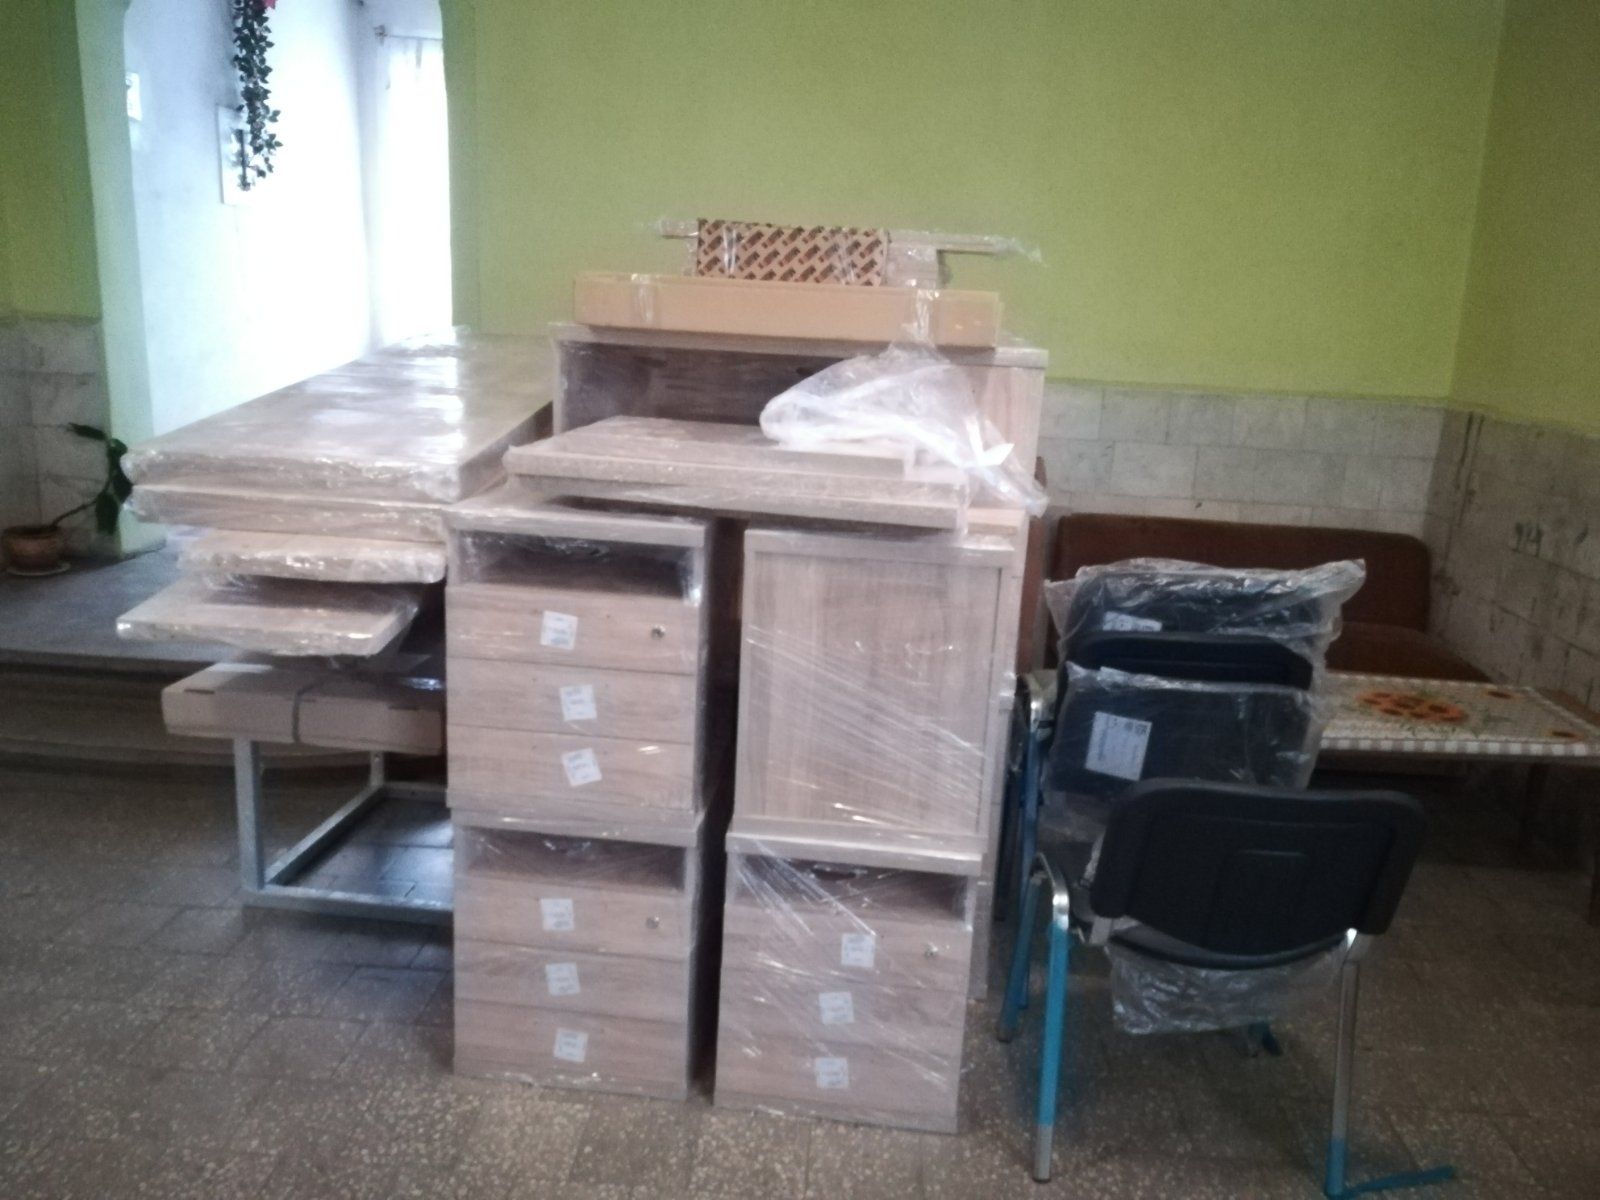 Все ОТГ в Закарпатье обеспечат компьютерным оборудованием и офисной мебелью